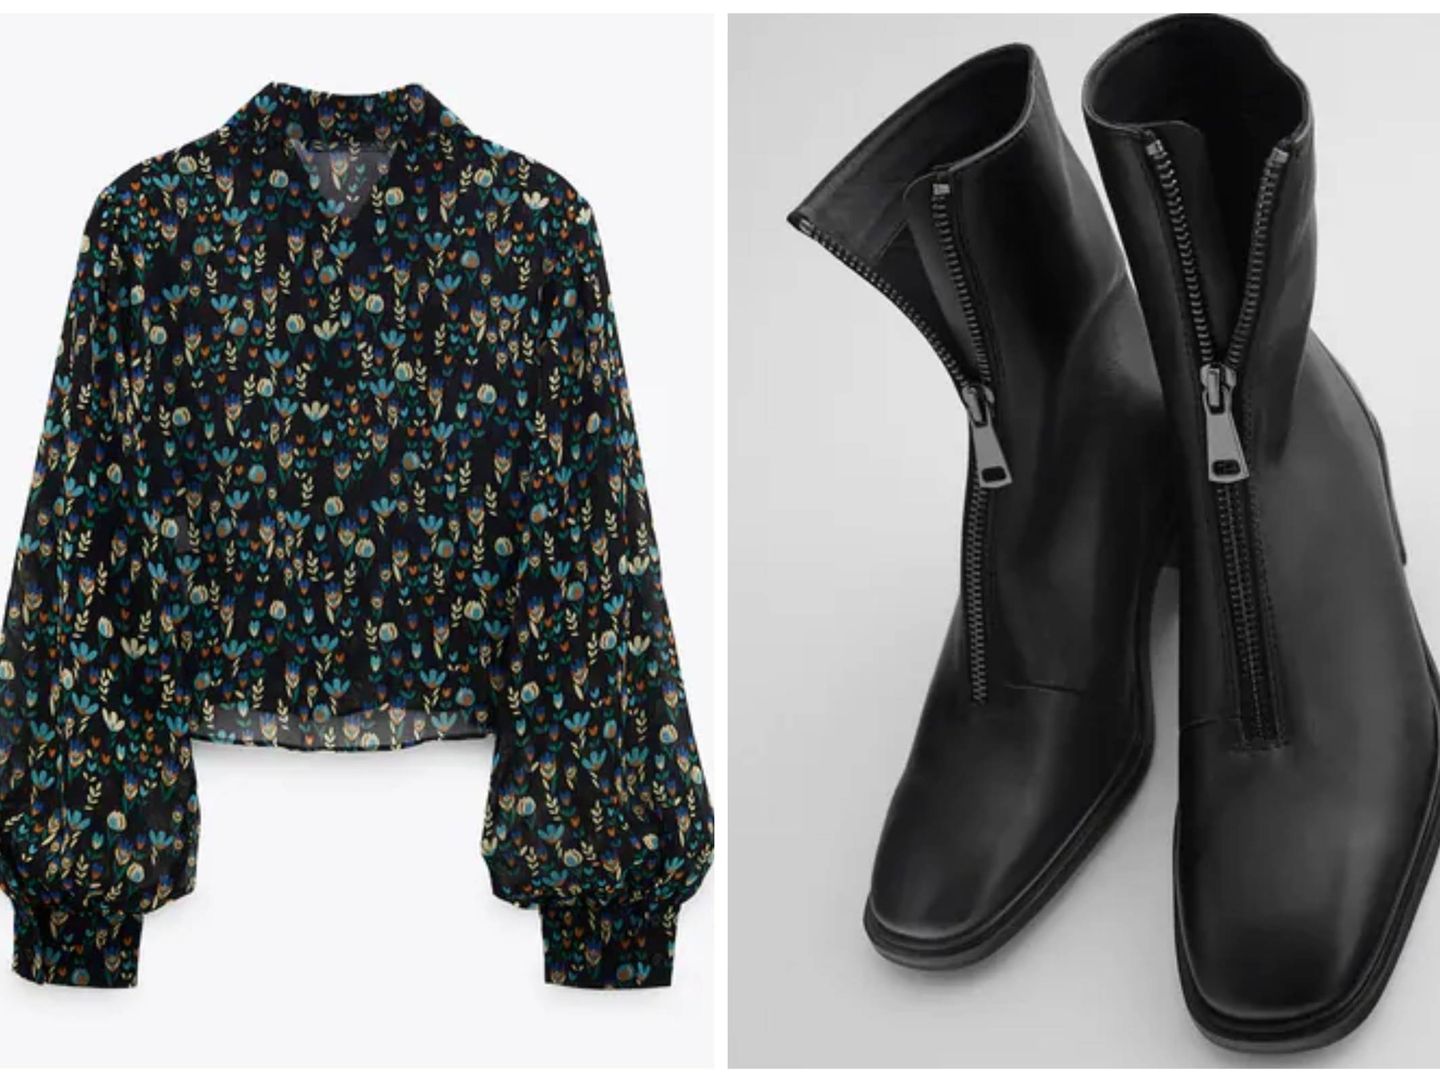 Blusa y botines de la nueva colección de Zara. (Cortesía)